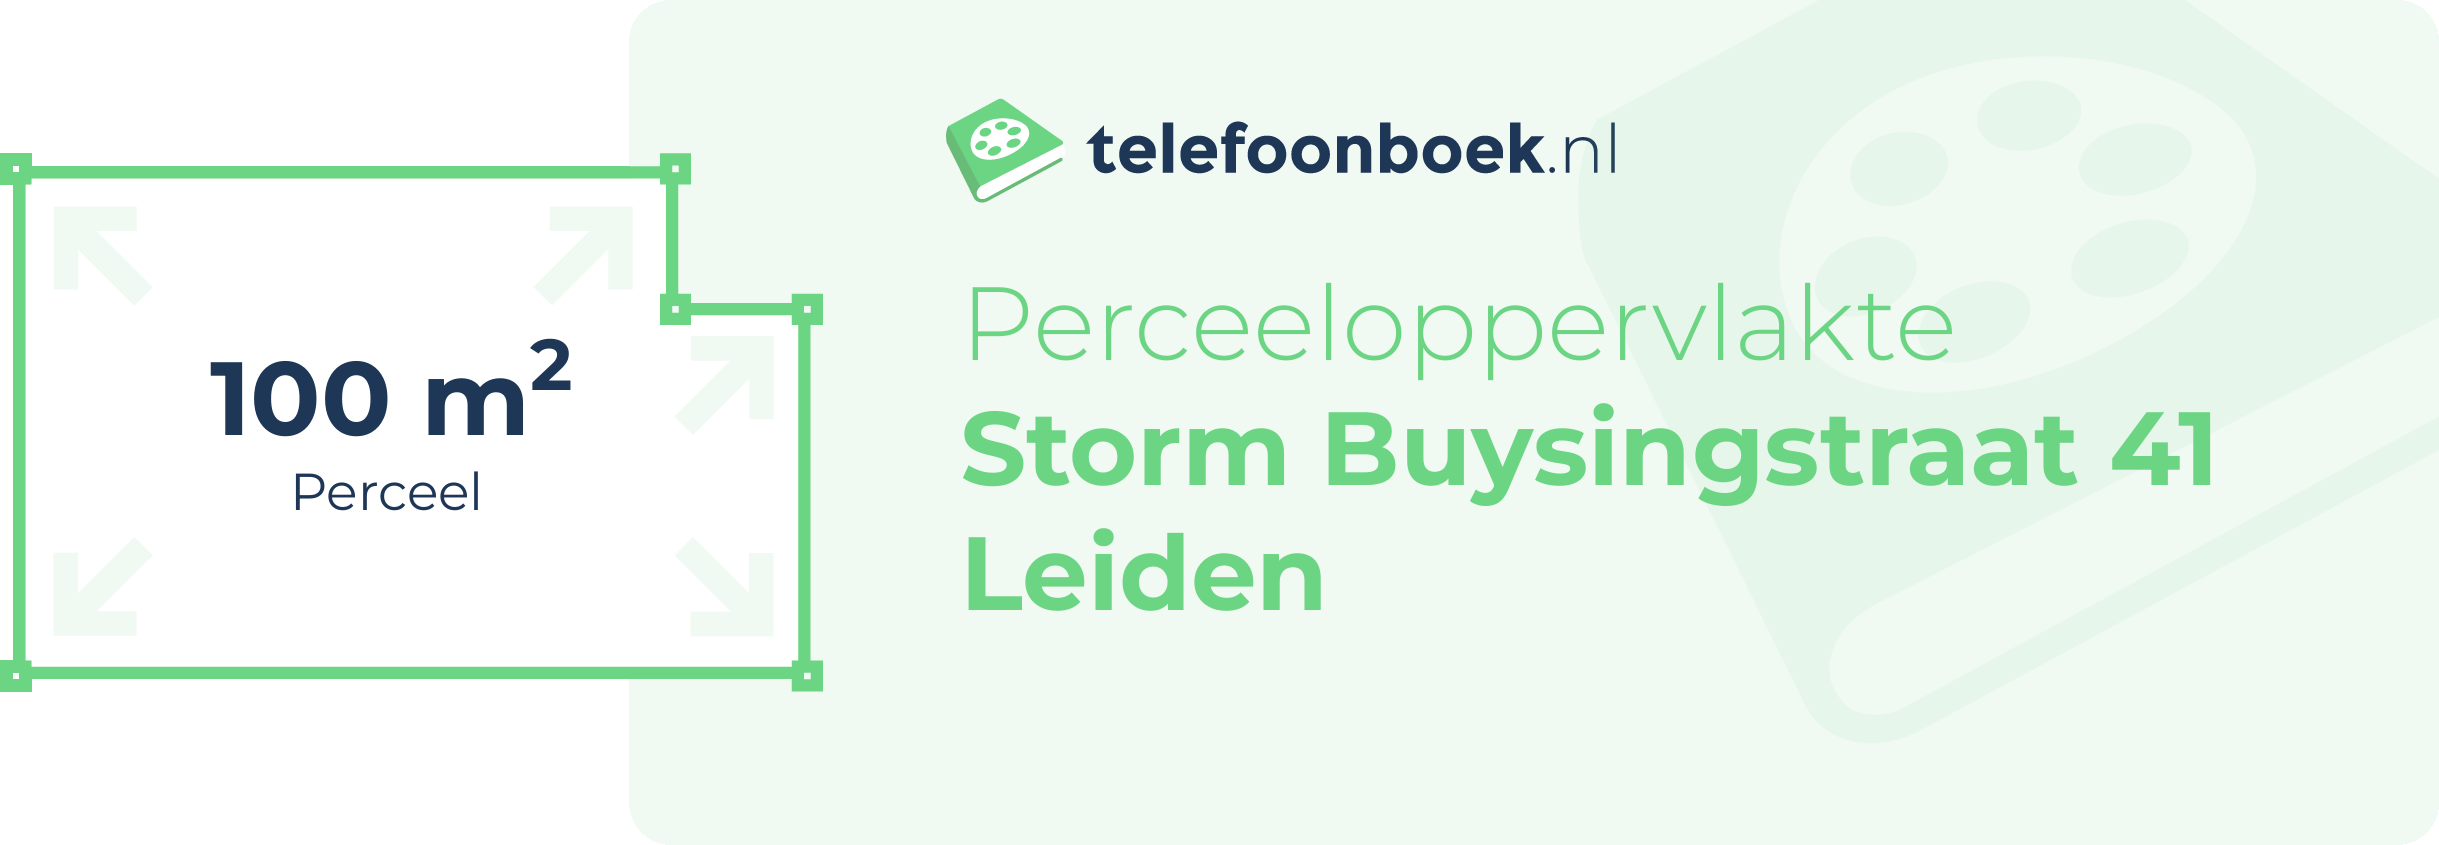 Perceeloppervlakte Storm Buysingstraat 41 Leiden